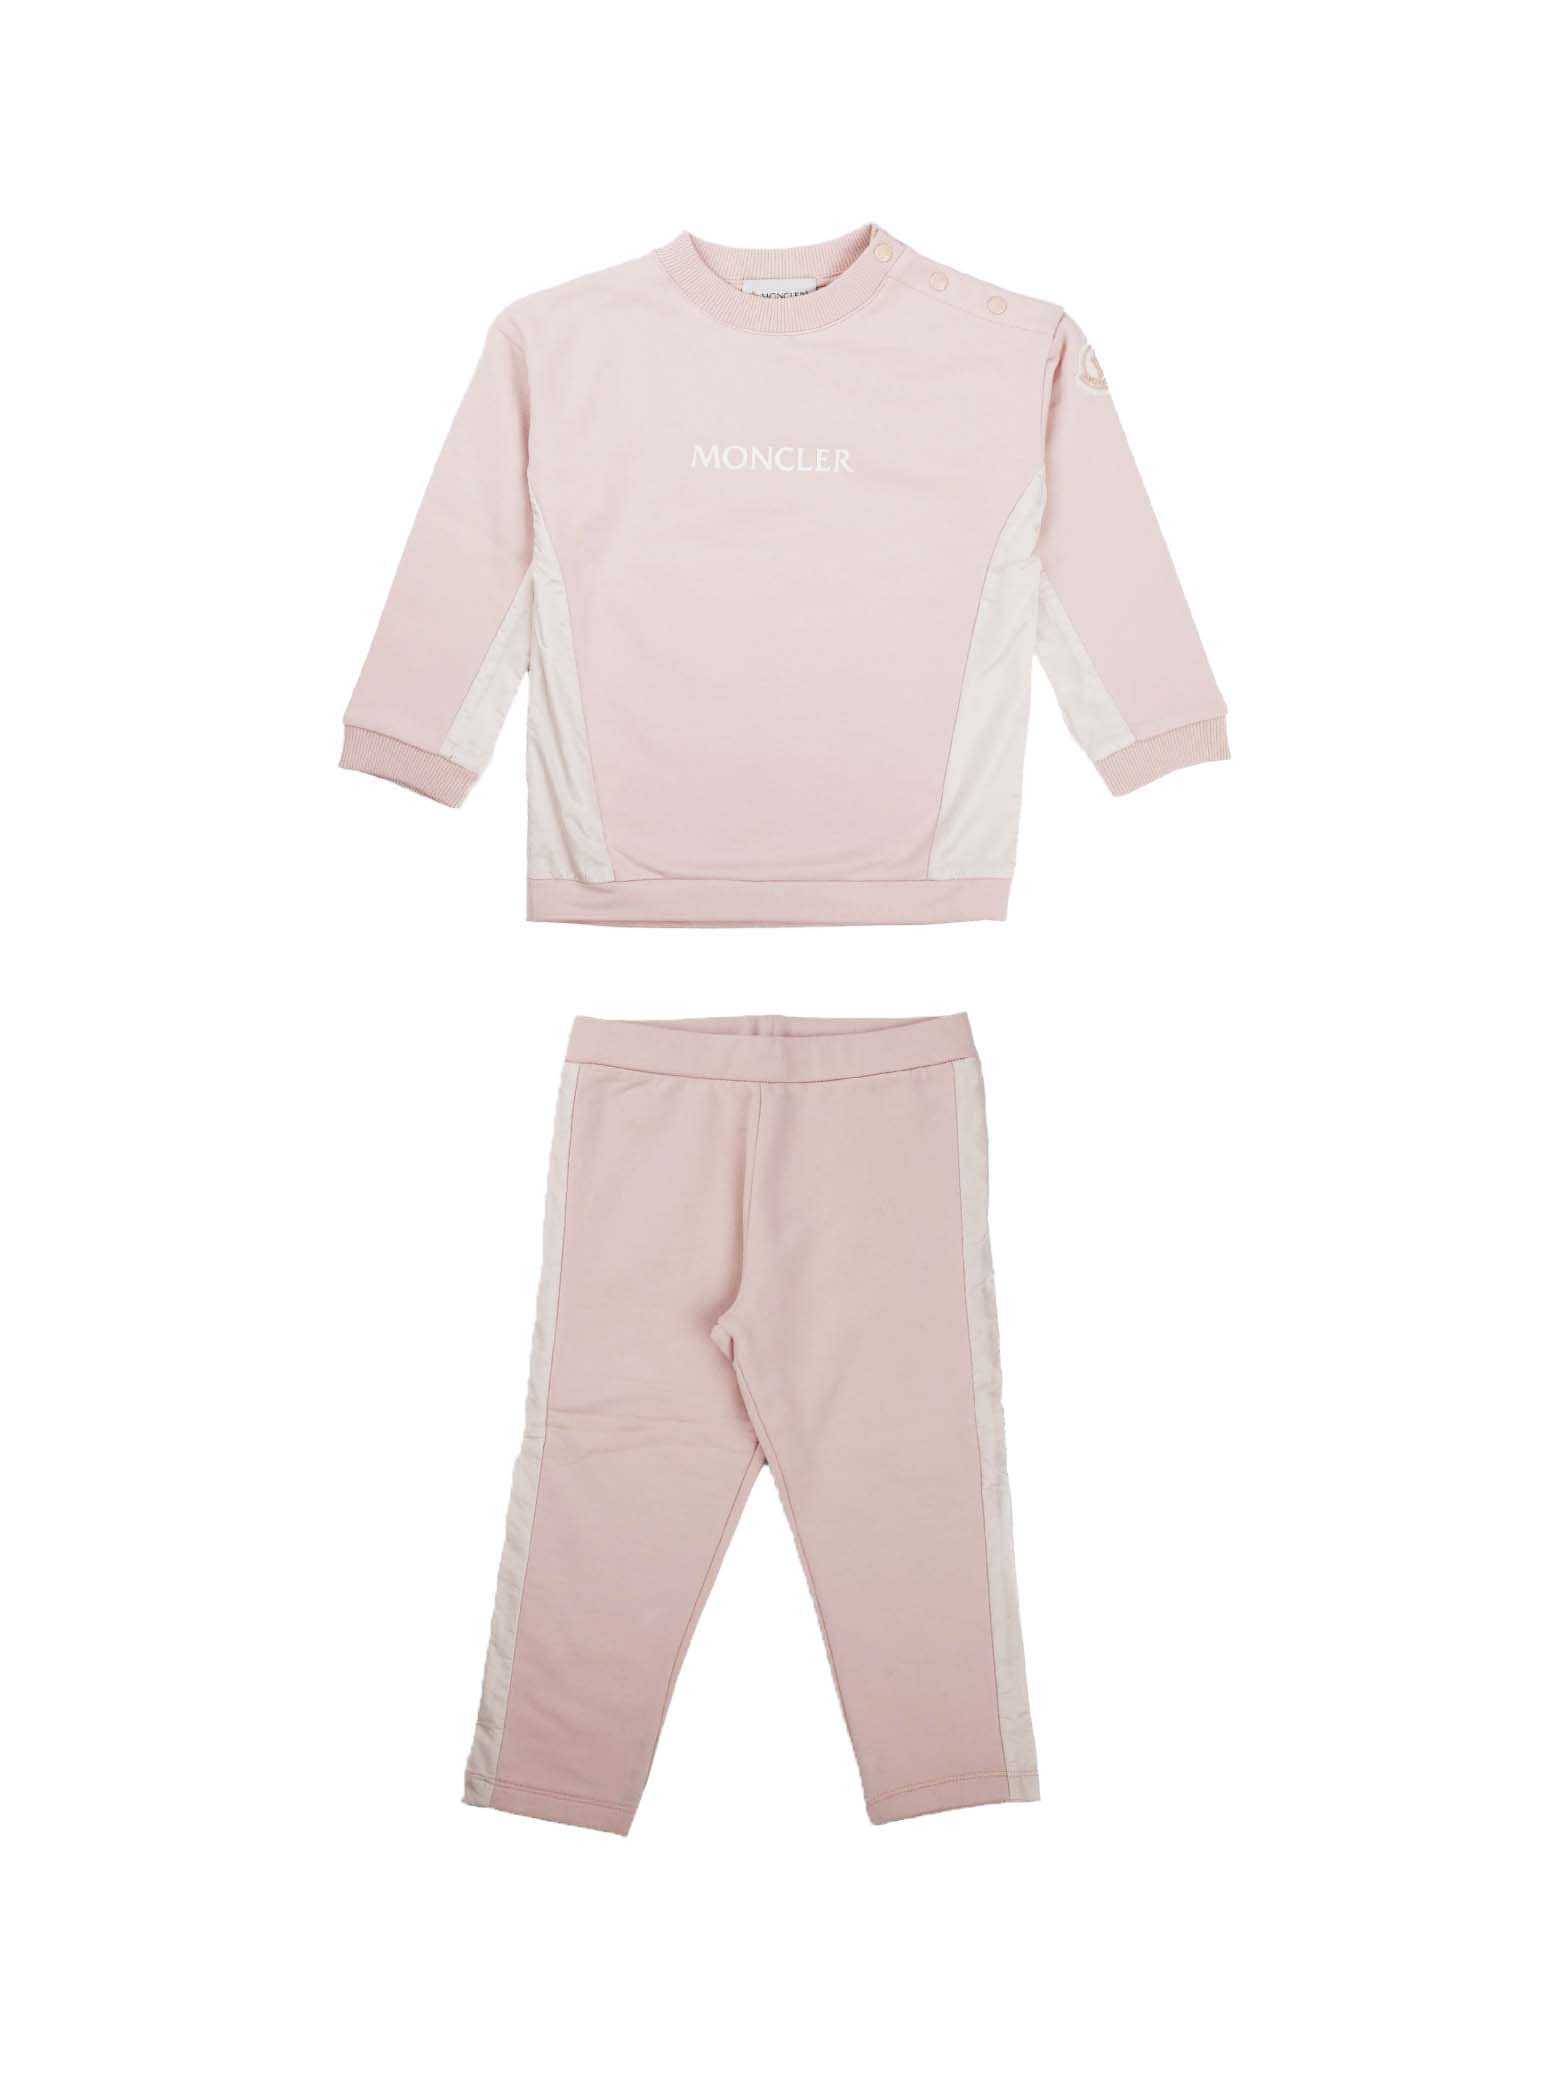 Moncler Complete Suit With Pink Crew Neck Sweatshirt